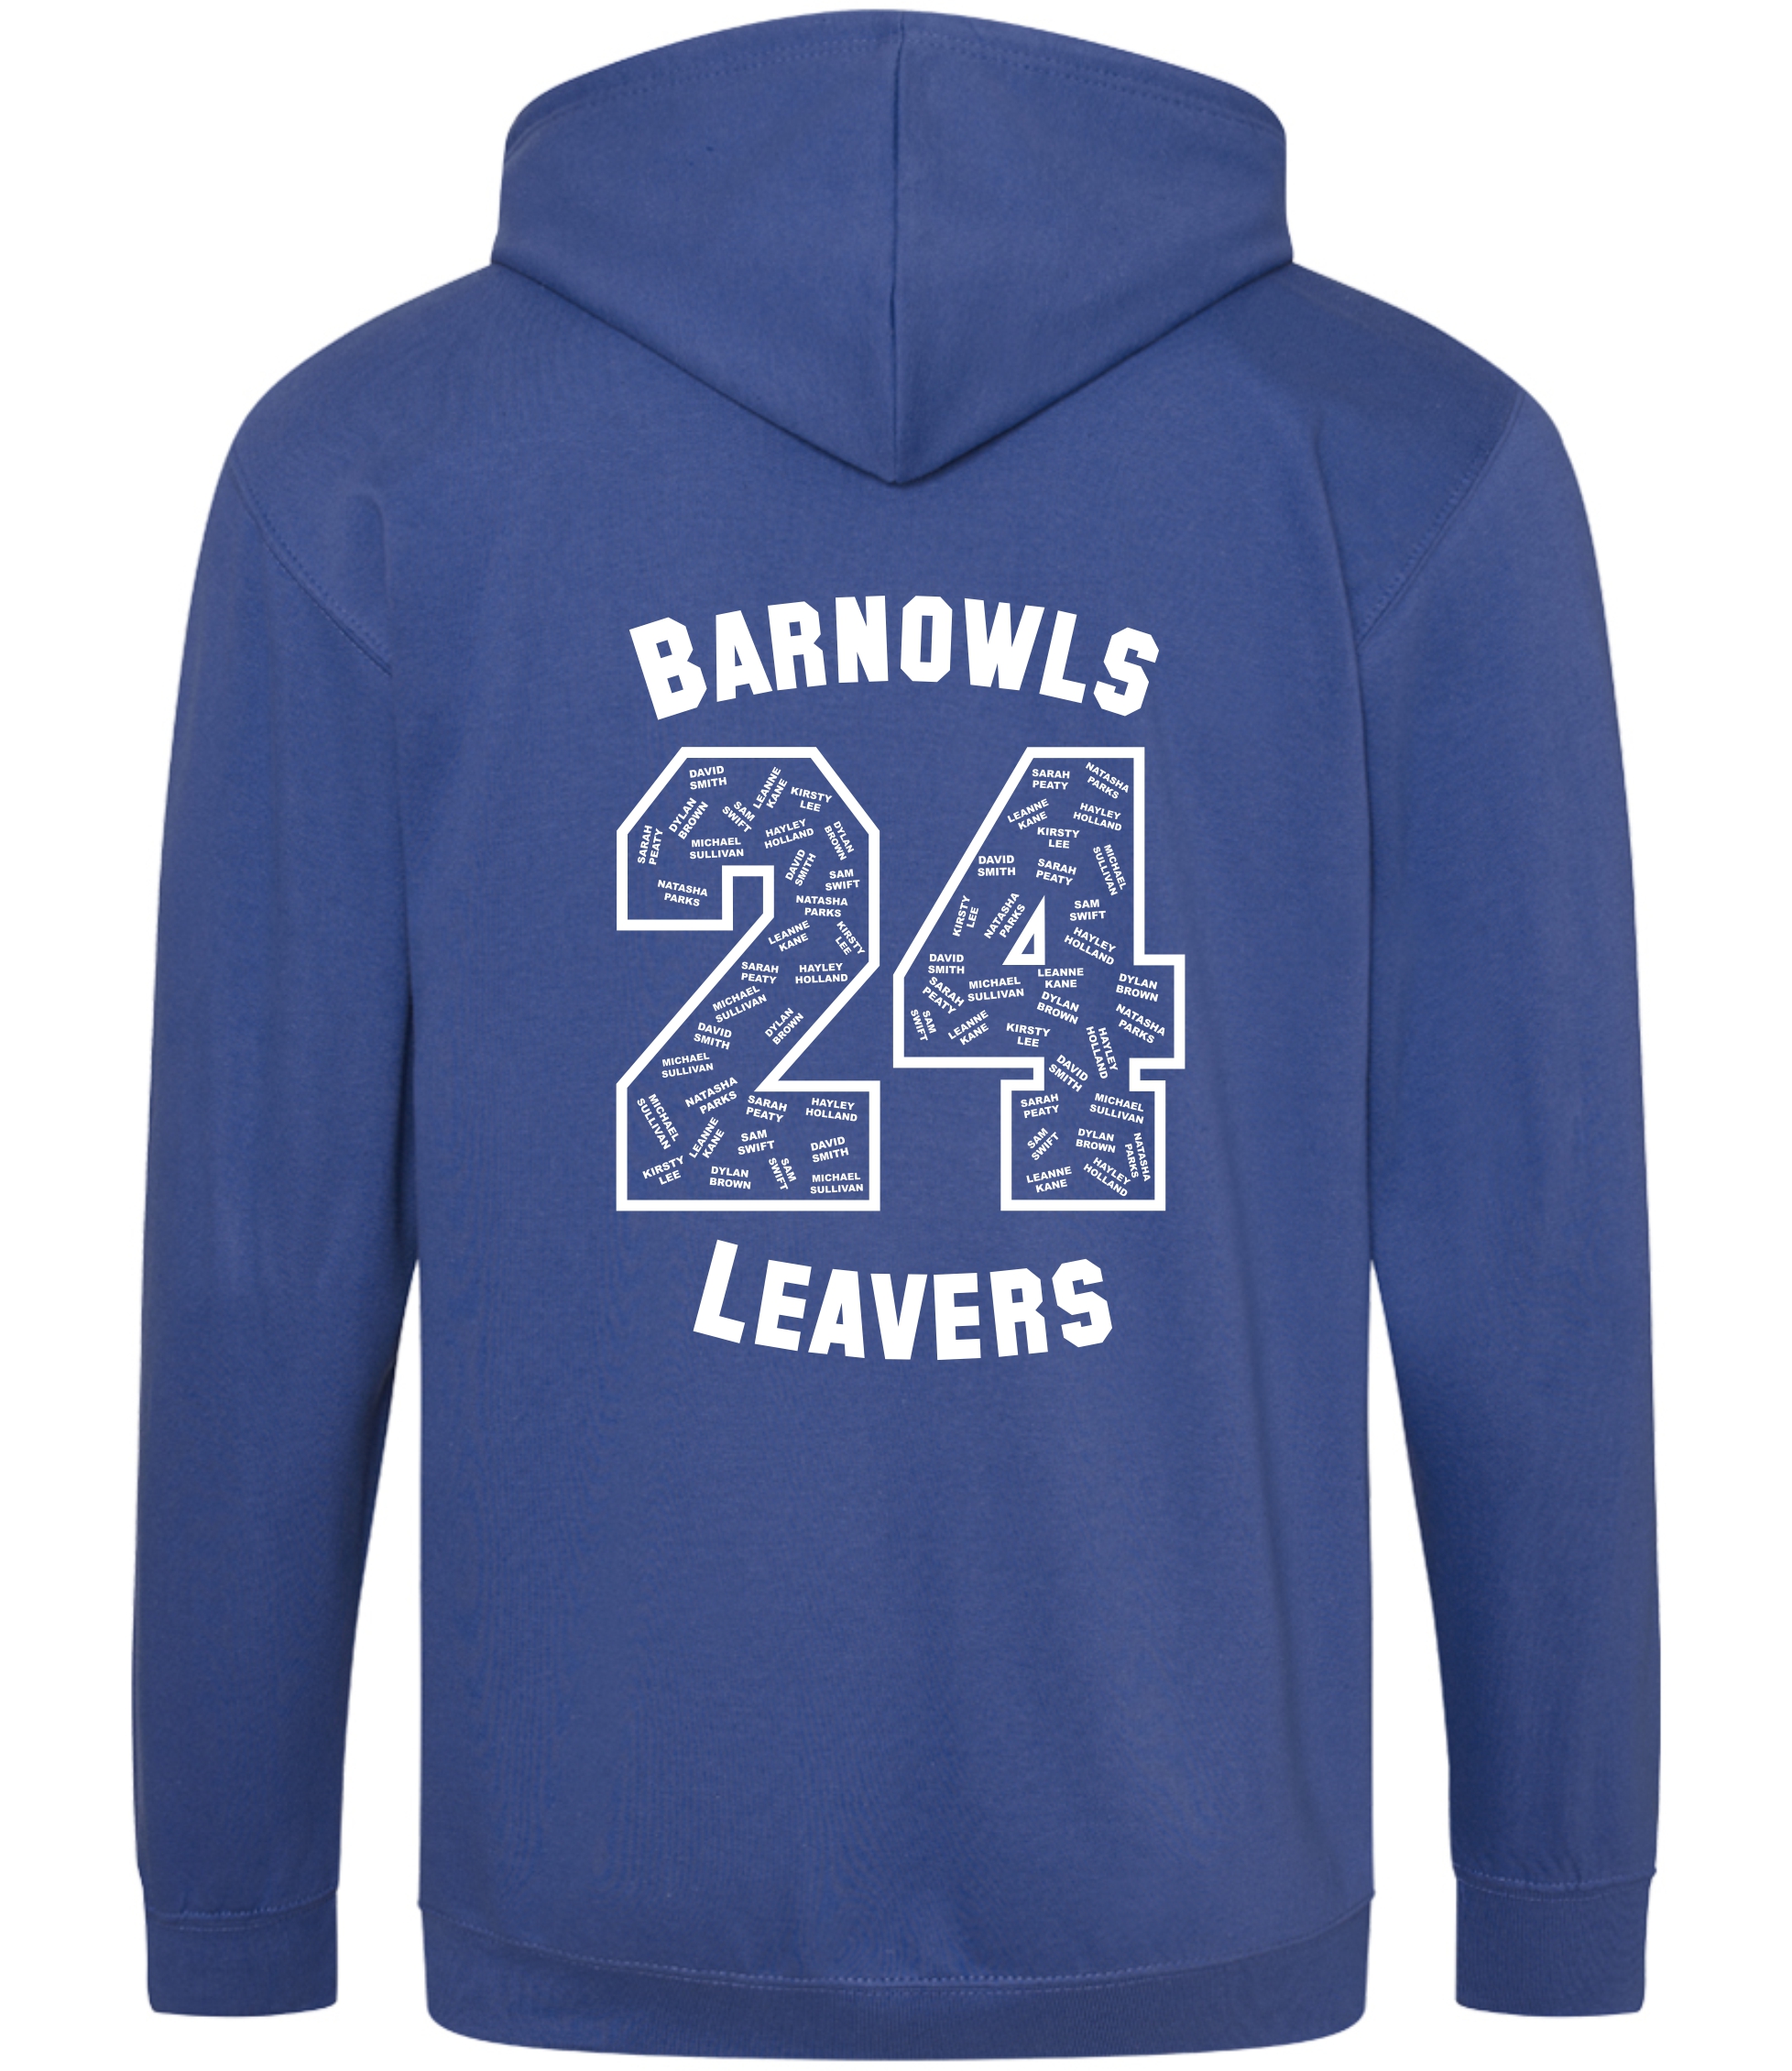 Barnowls Leavers Zipped Hoodies - Royal Blue - The Print Lab Printing ...